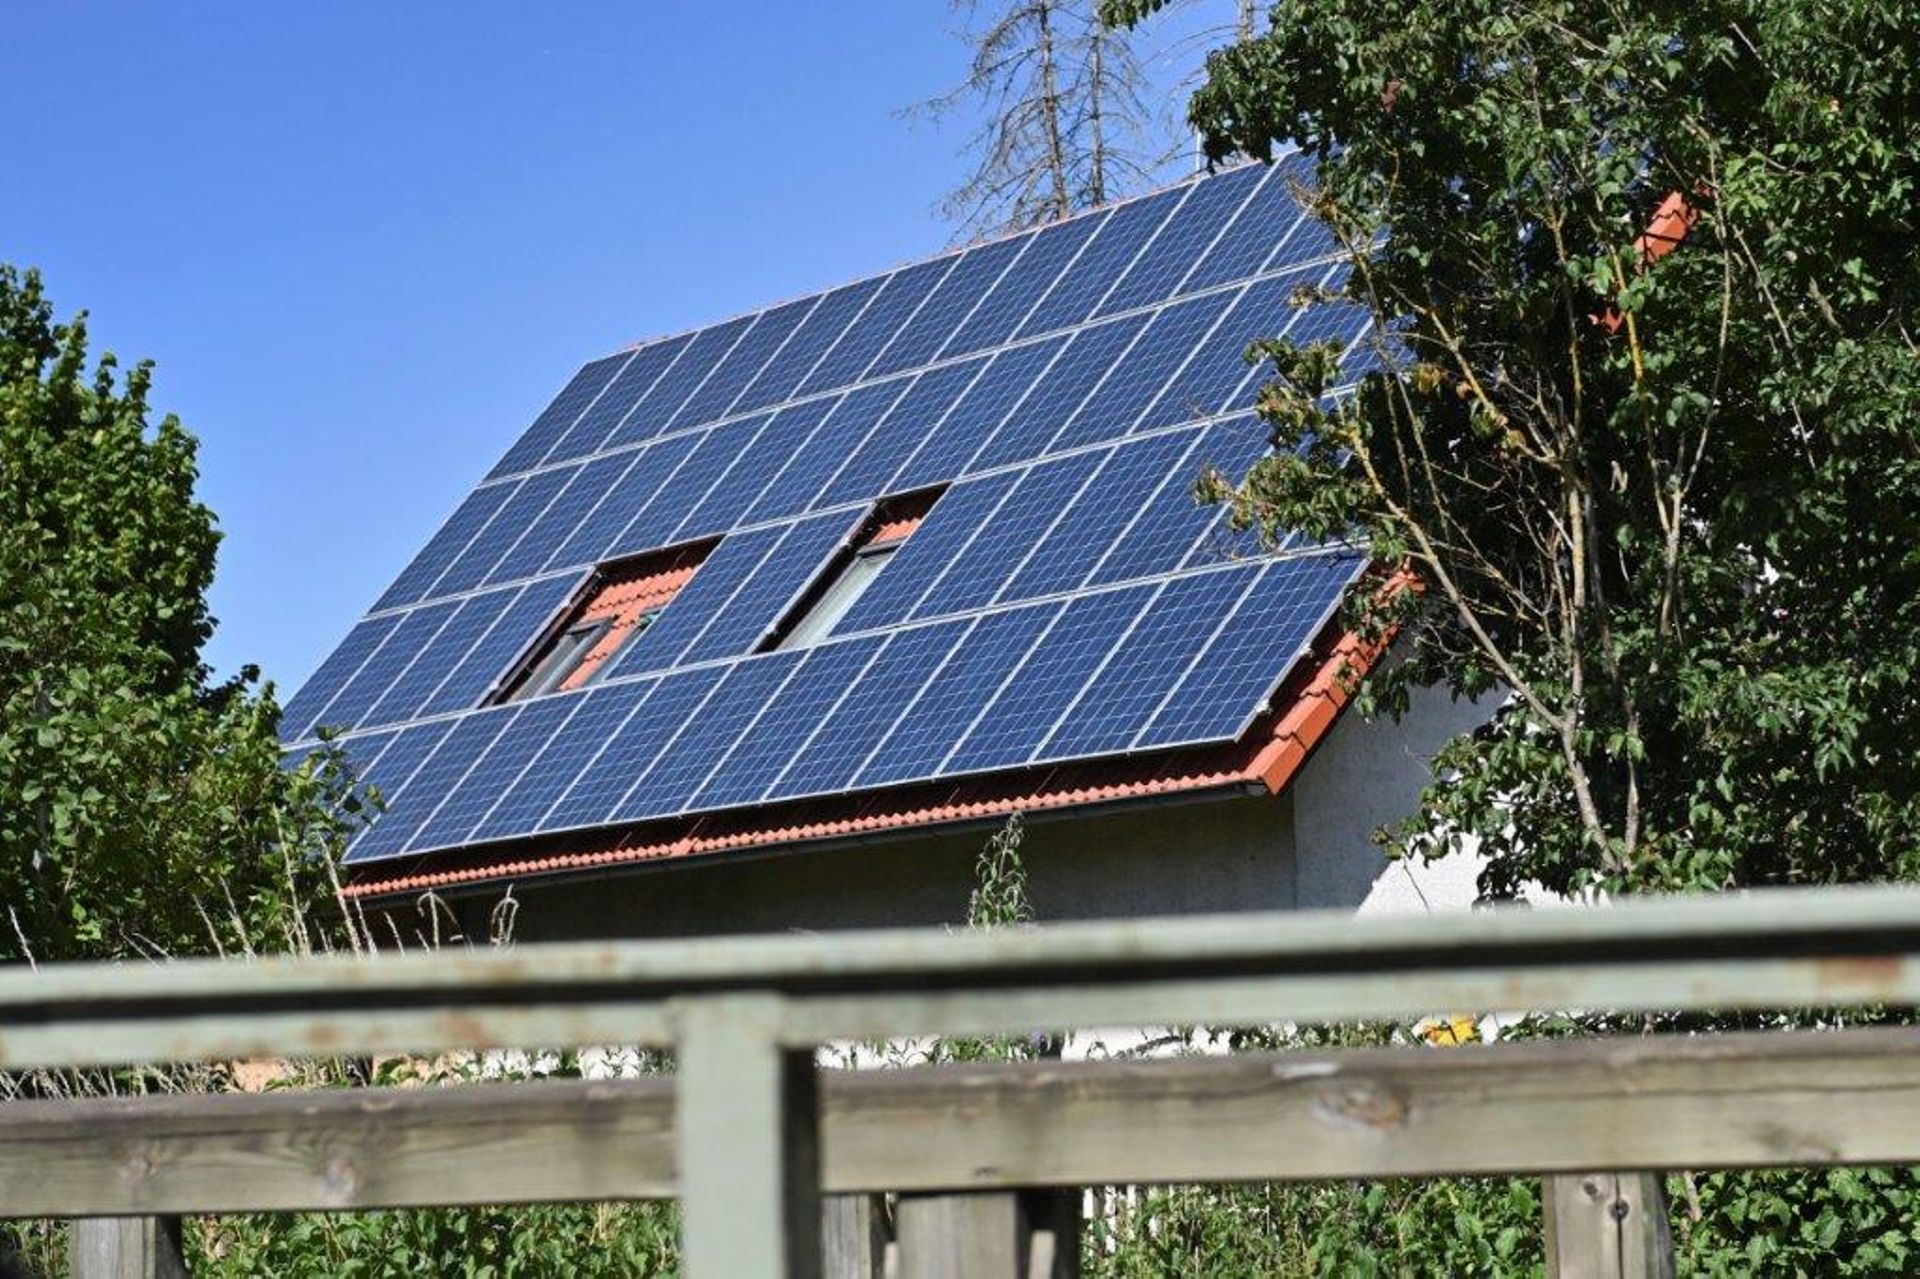 SOLAIRE Produits Energies renouvelables Kit éclairage solaire 4